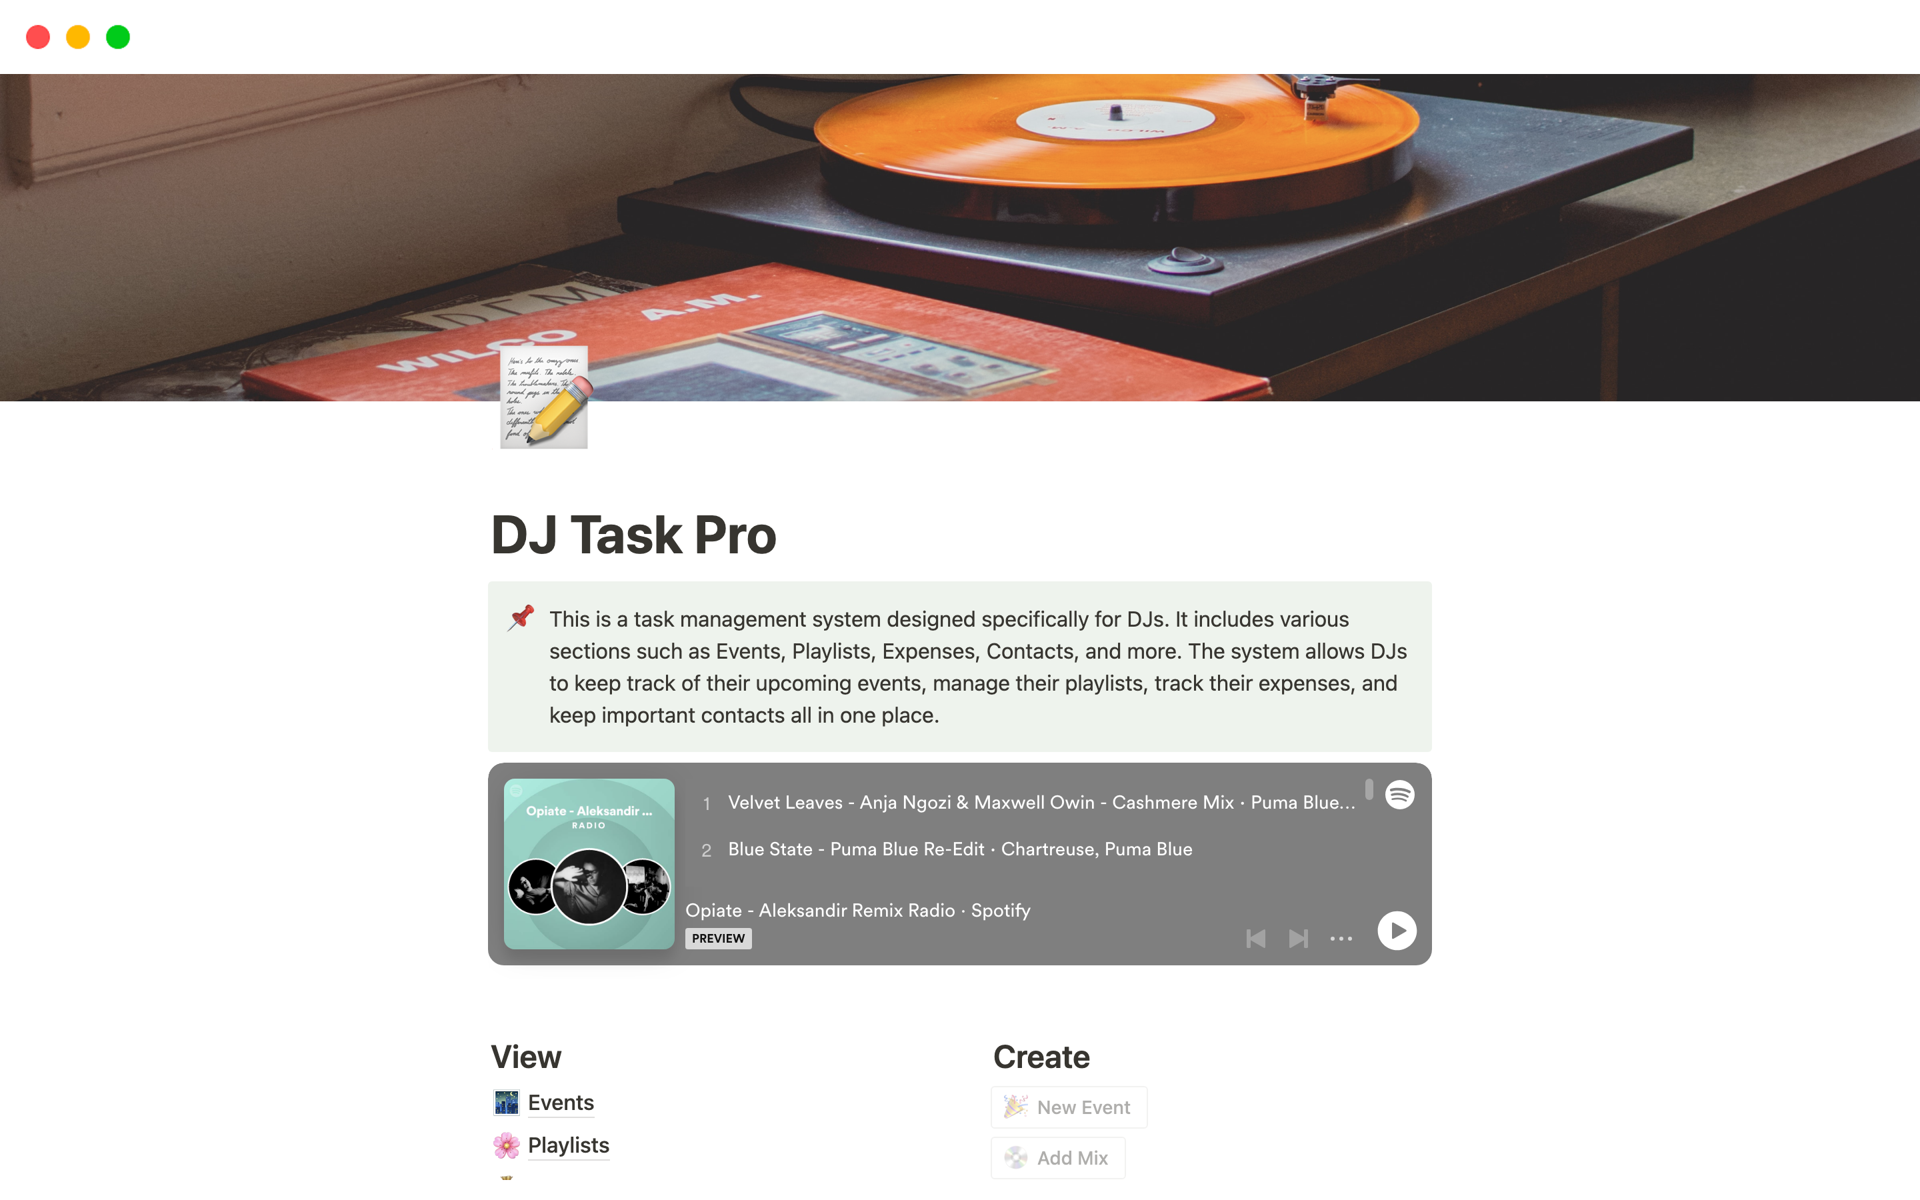 A comprehensive task management system tailored for DJs.